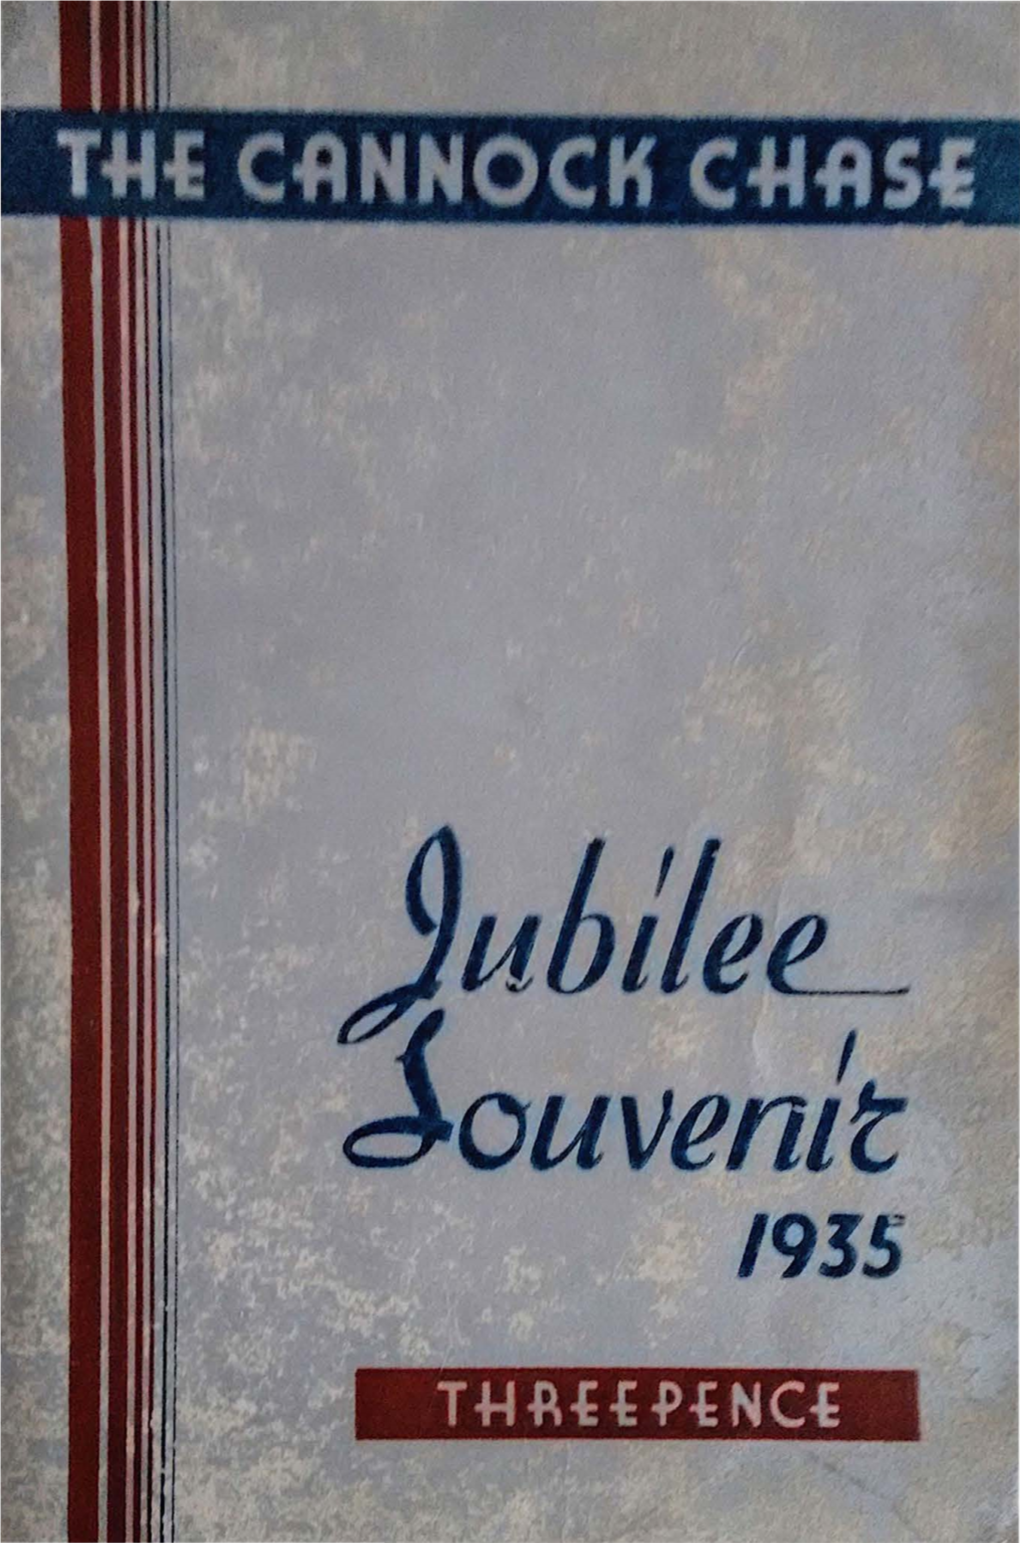 Cannock Chase Jubilee Souvenir 1935